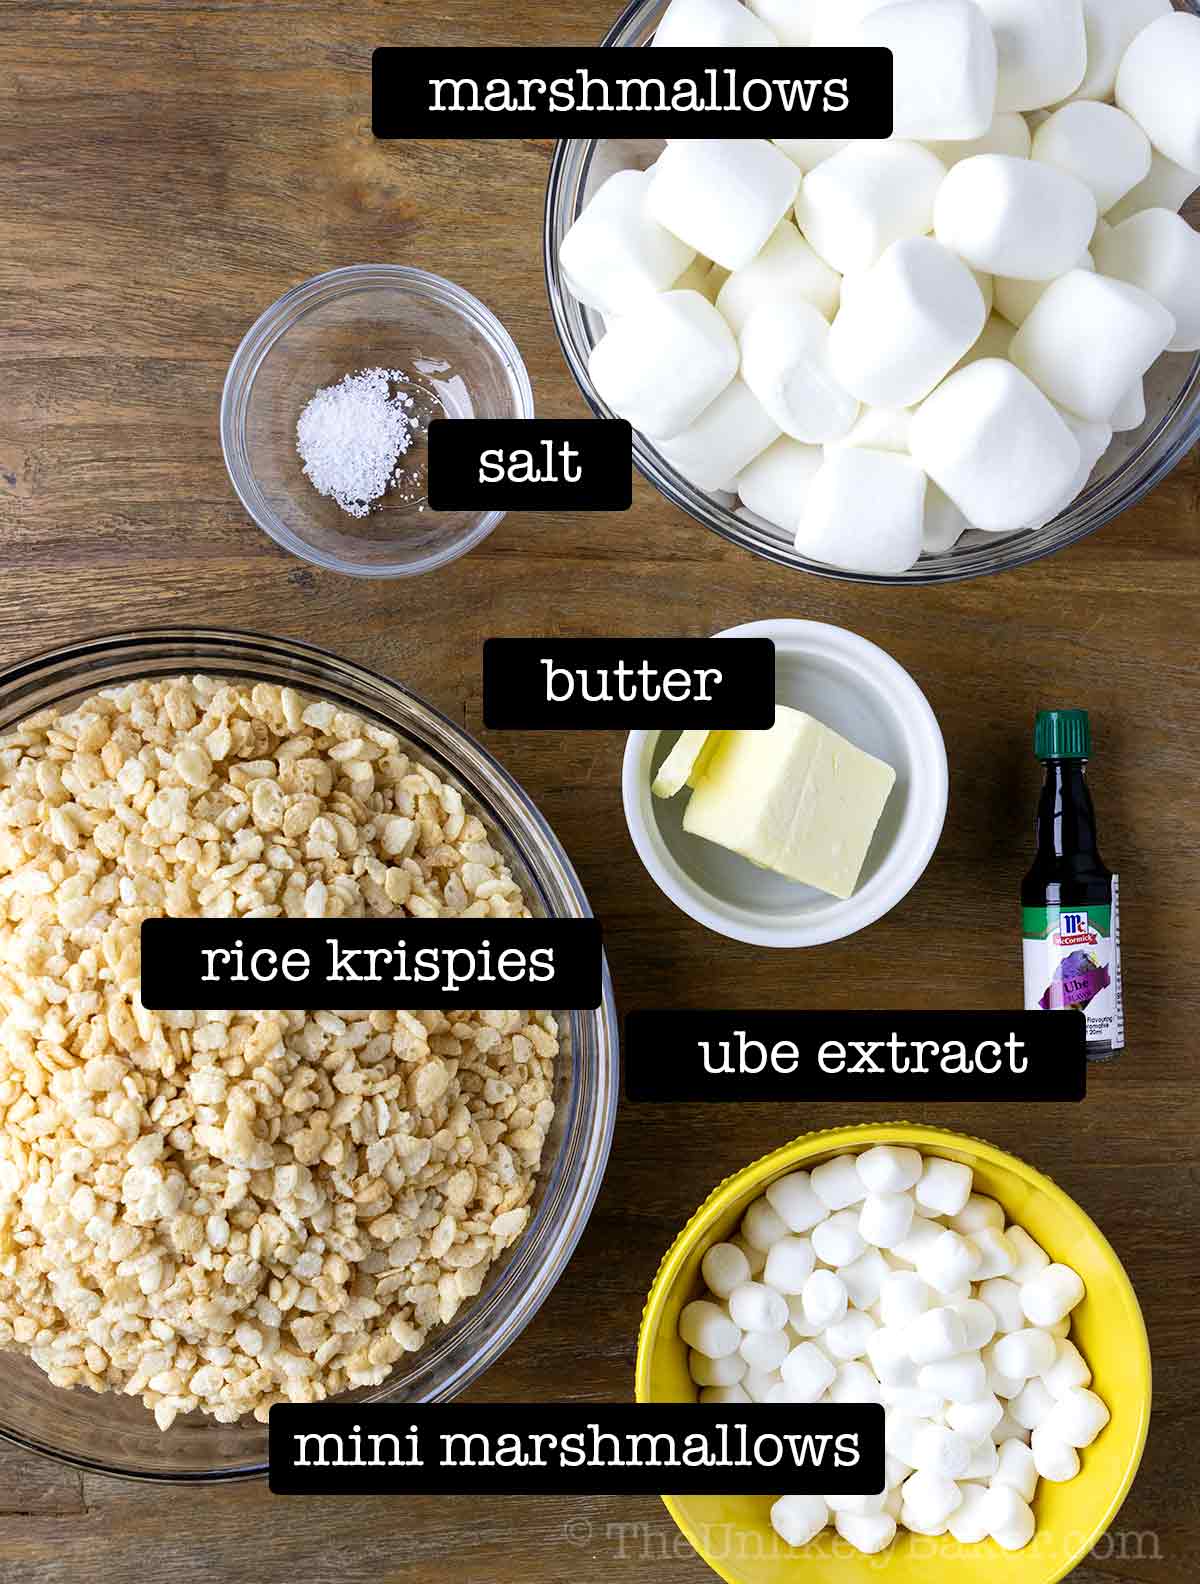 Ingredients for ube rice krispies.